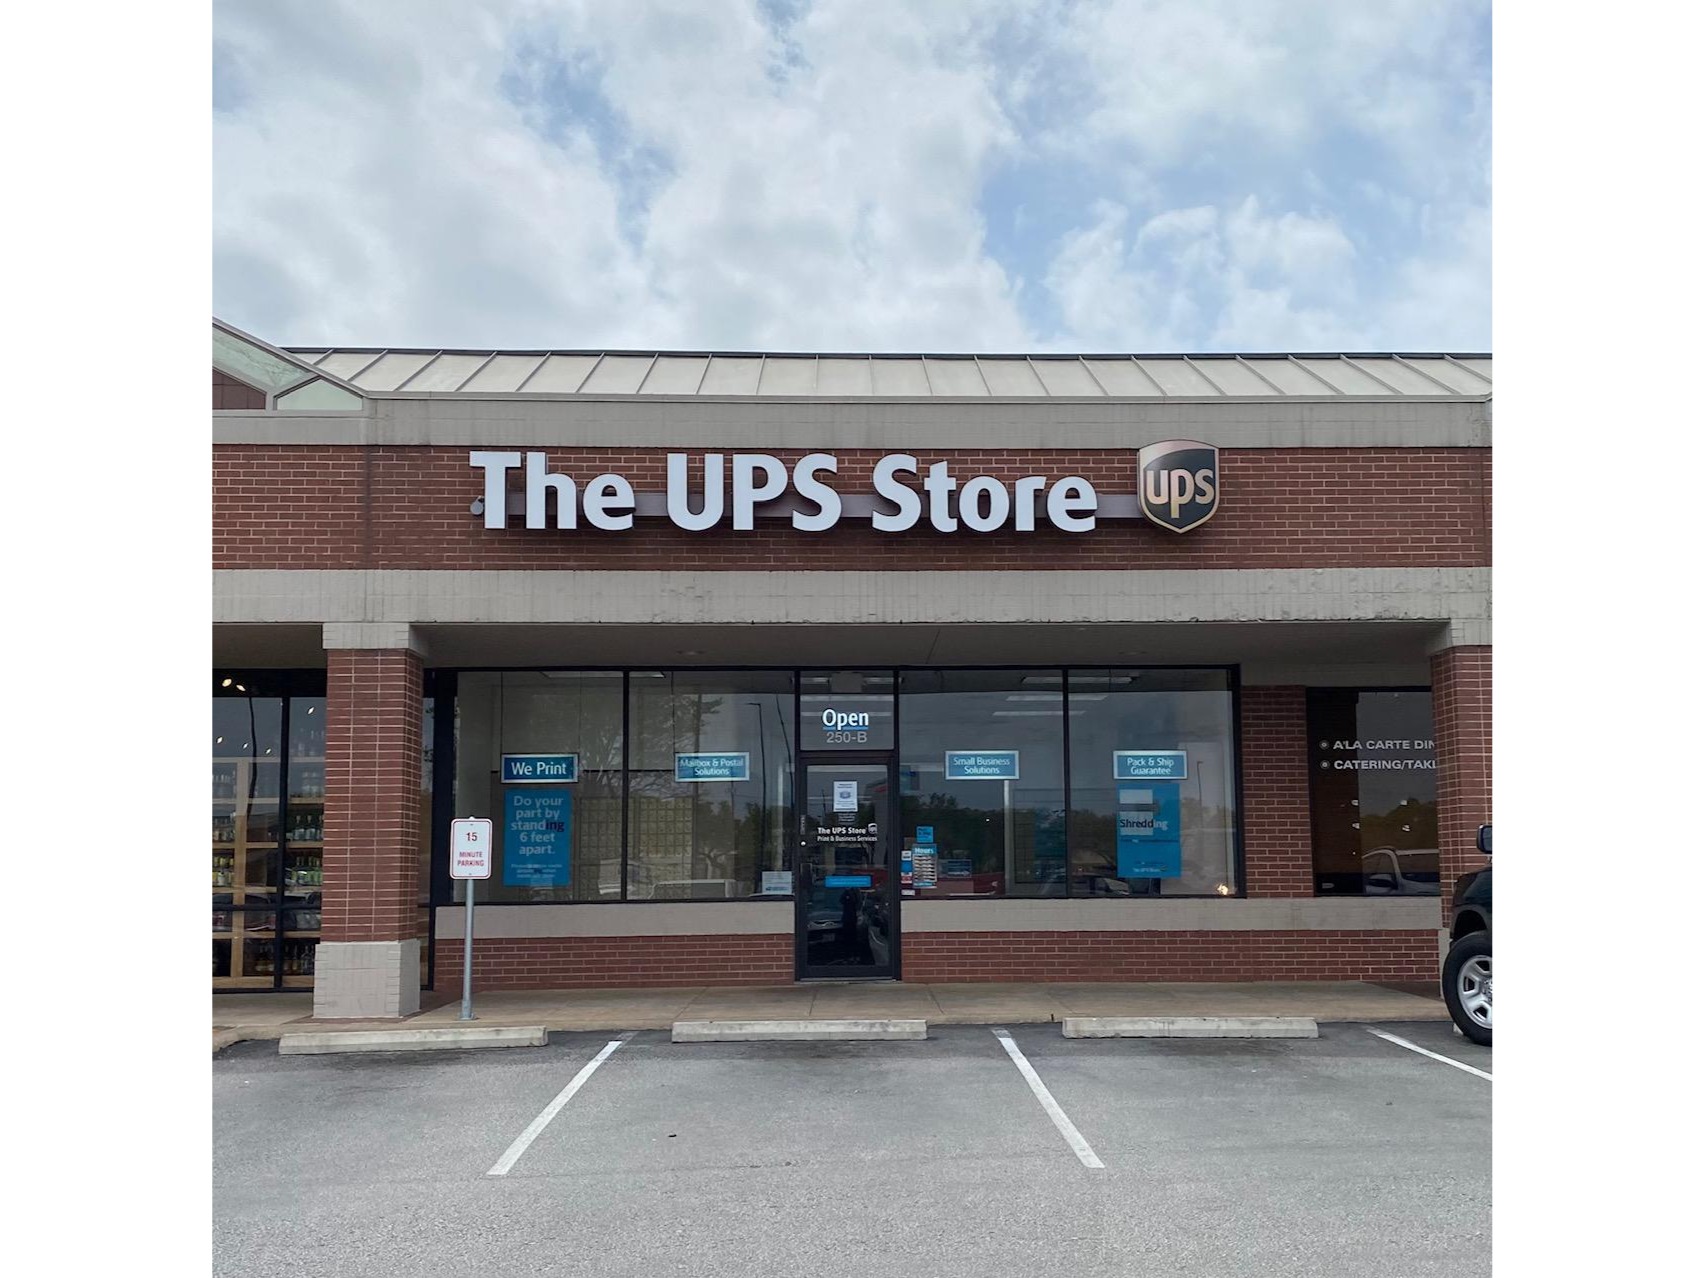 Facade of The UPS Store Mopac Expwy N